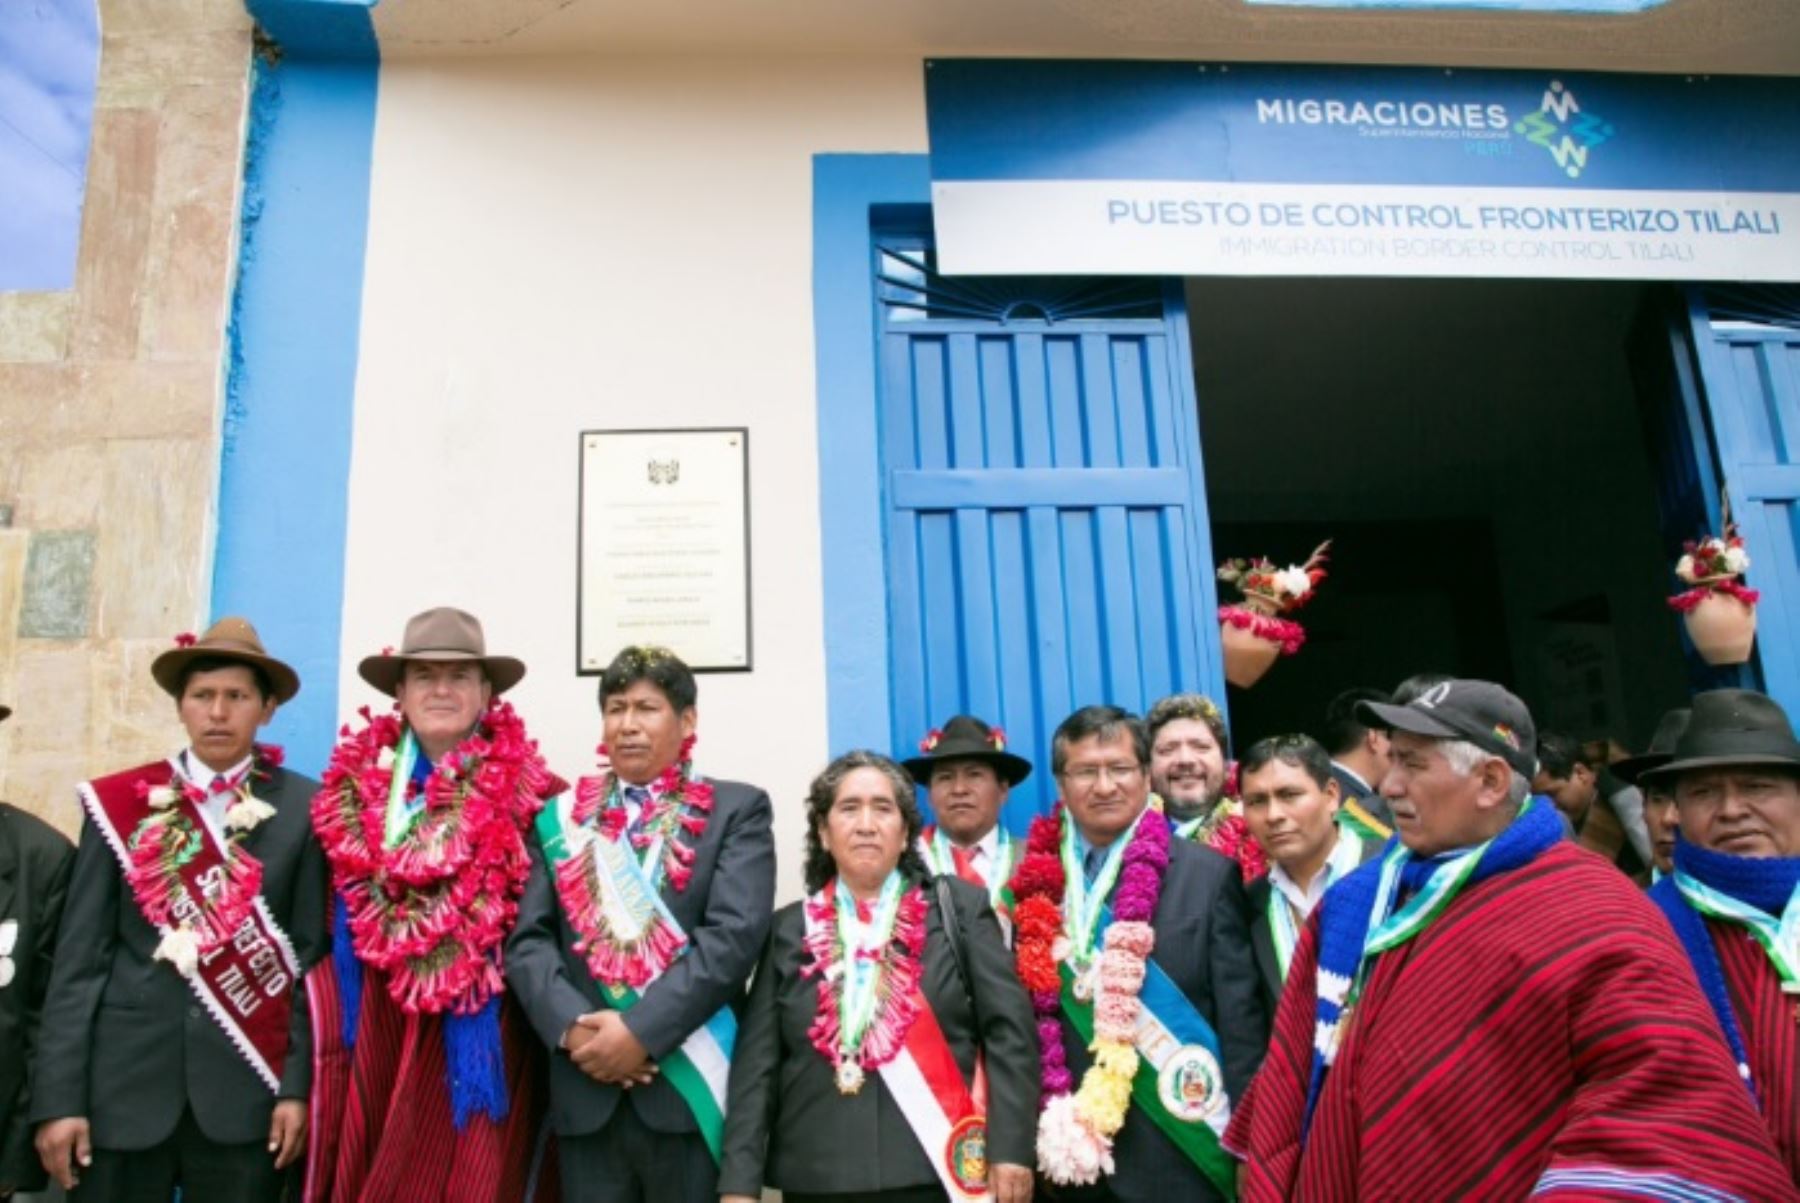 La Superintendencia Nacional de Migraciones inauguró el Puesto de Control Fronterizo de Tilali, provincia de Moho, departamento de Puno, para facilitar y hacer más segura la atención a los turistas nacionales y extranjeros que ingresan y salen del país por la orilla oriental del Lago Titicaca, en la frontera con Bolivia.